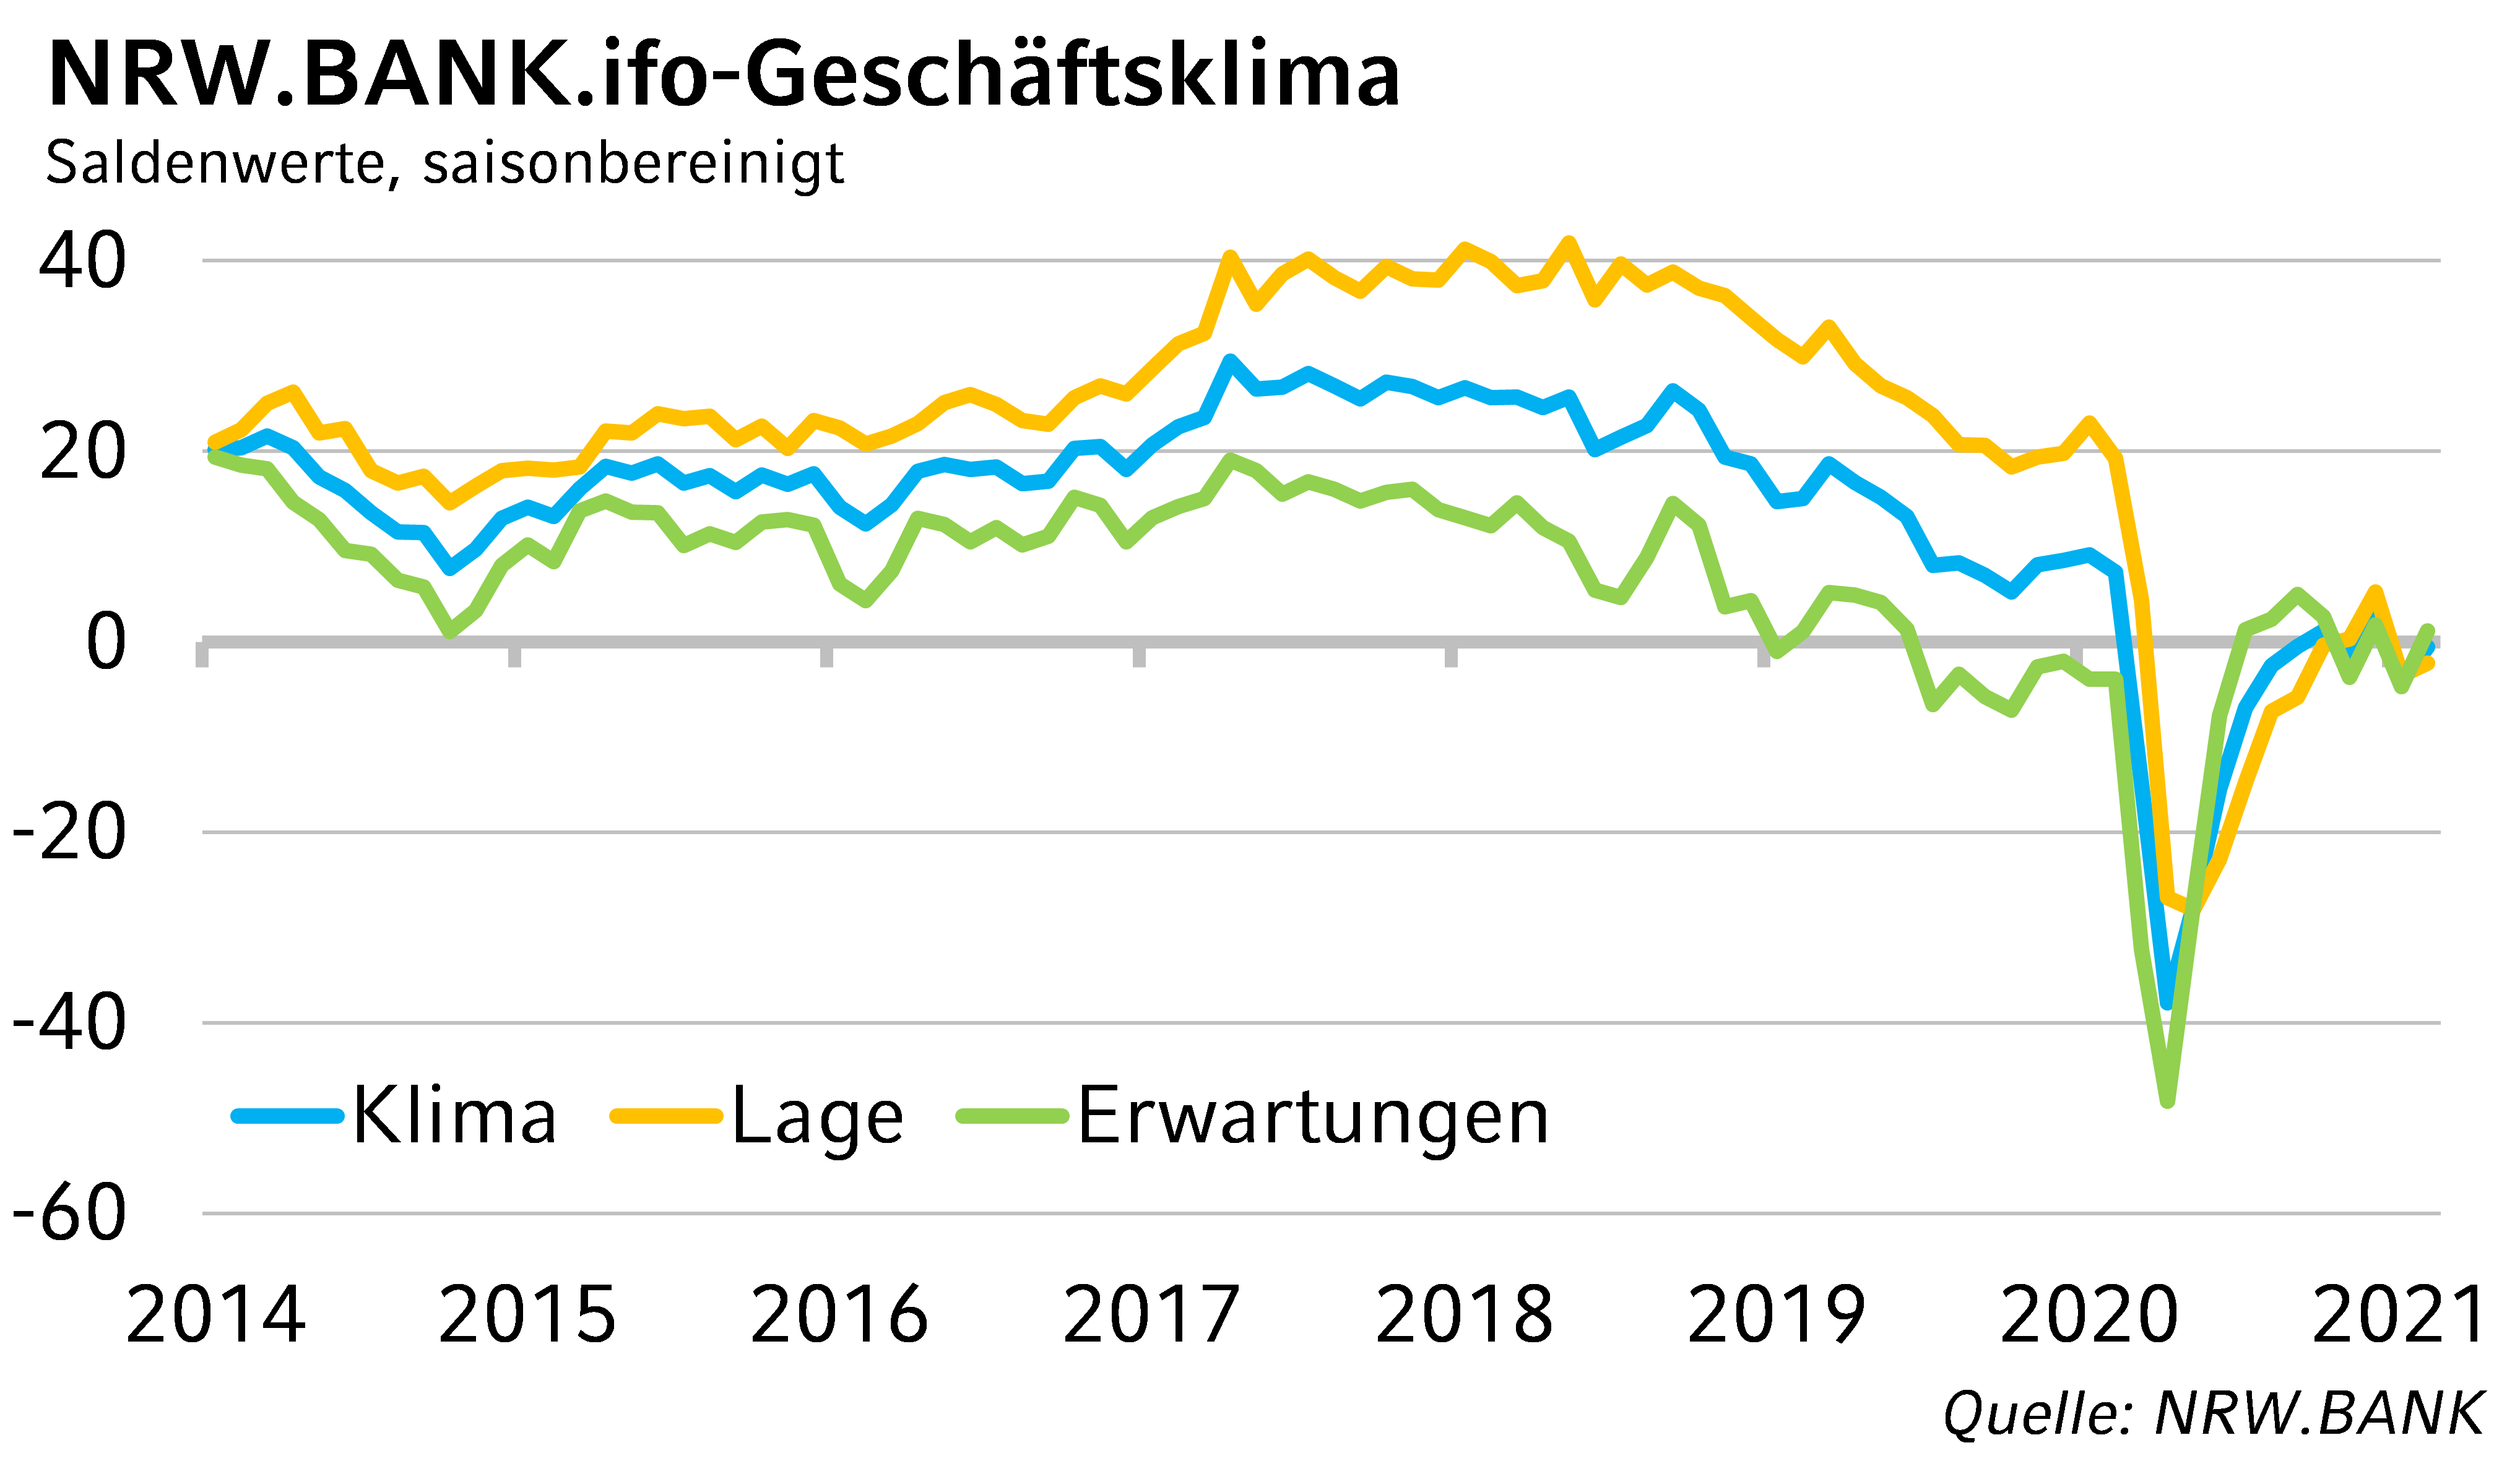 NRW.BANK.ifo-Geschäftsklima Februar 2021: NRW-Wirtschaft trotzt dem Lockdown